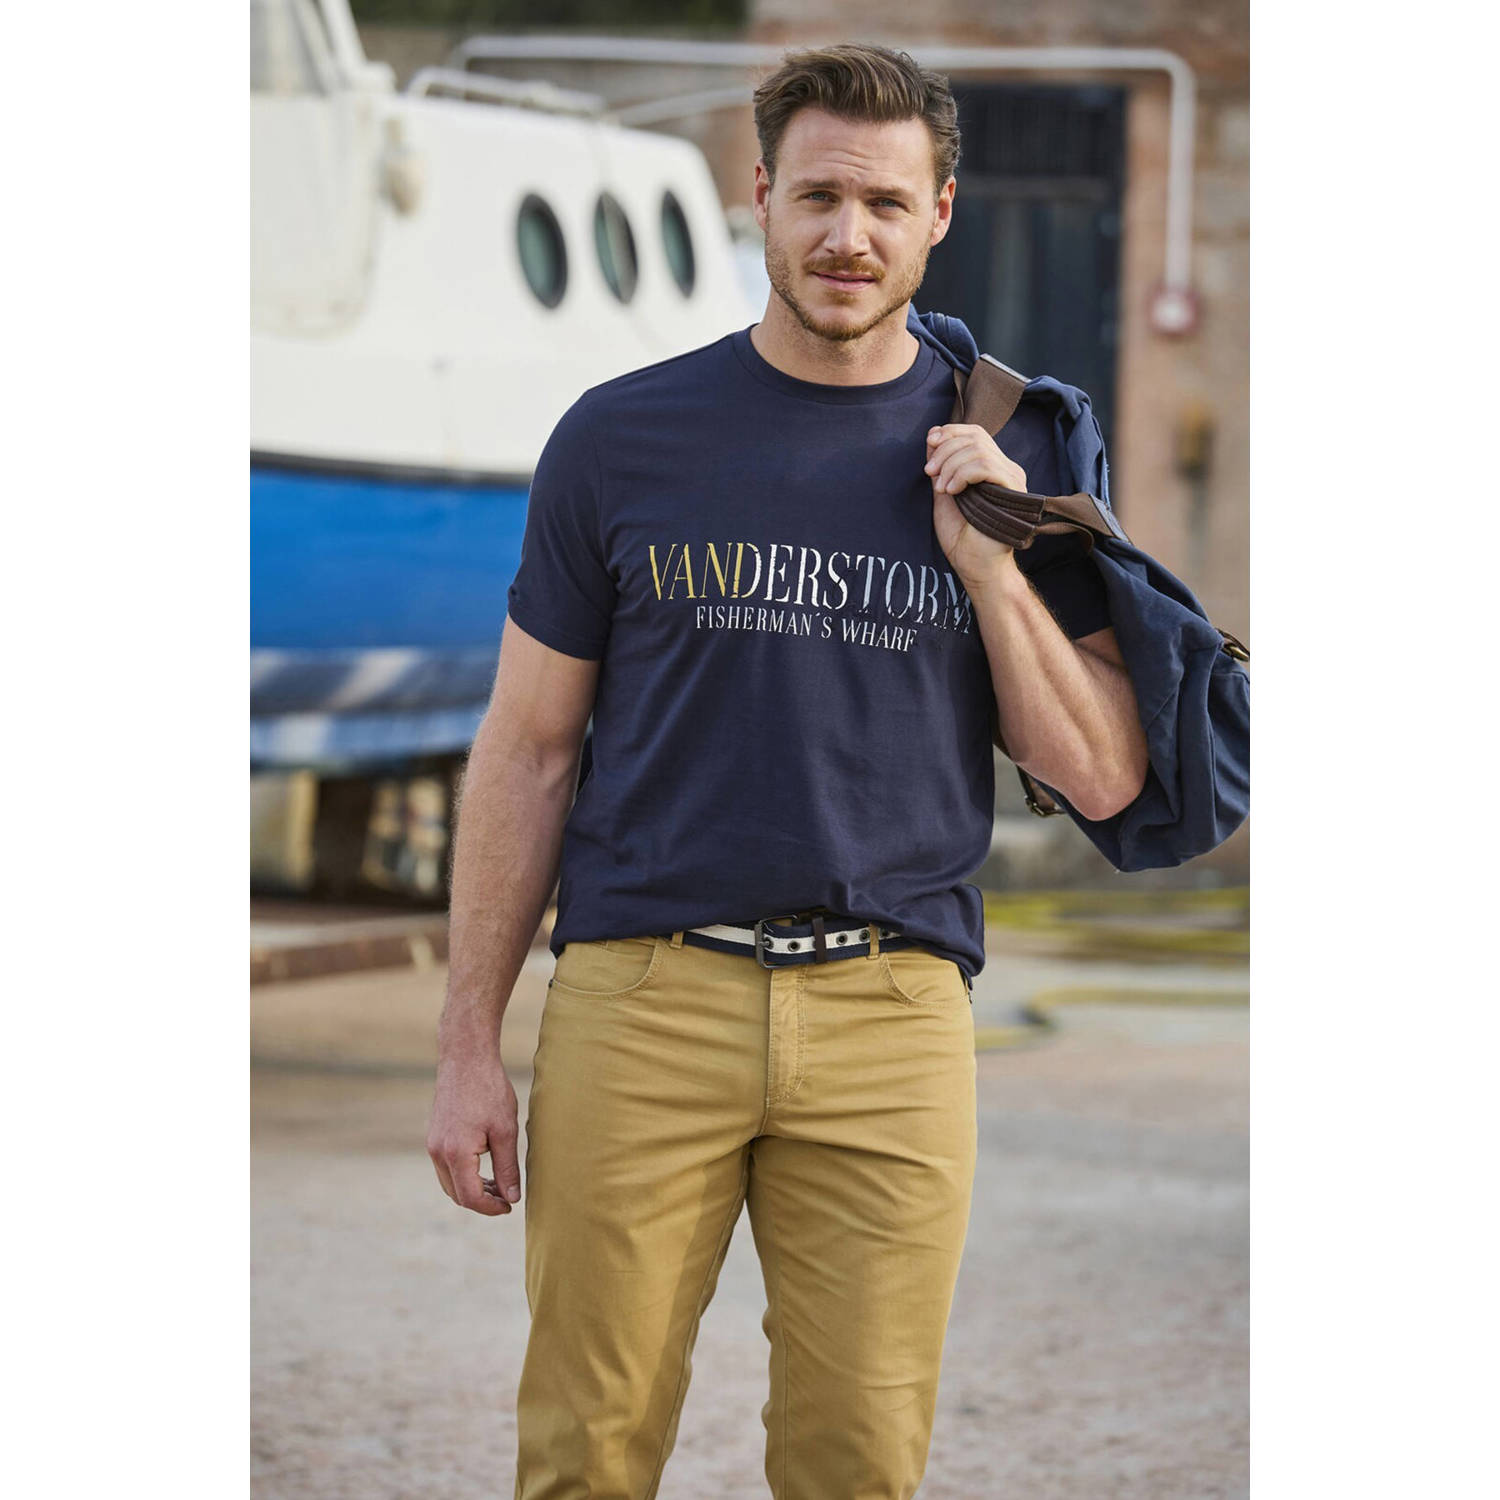 Jan Vanderstorm +FIT Collectie regular fit T-shirt BERGTHOR Plus Size met printopdruk donkerblauw